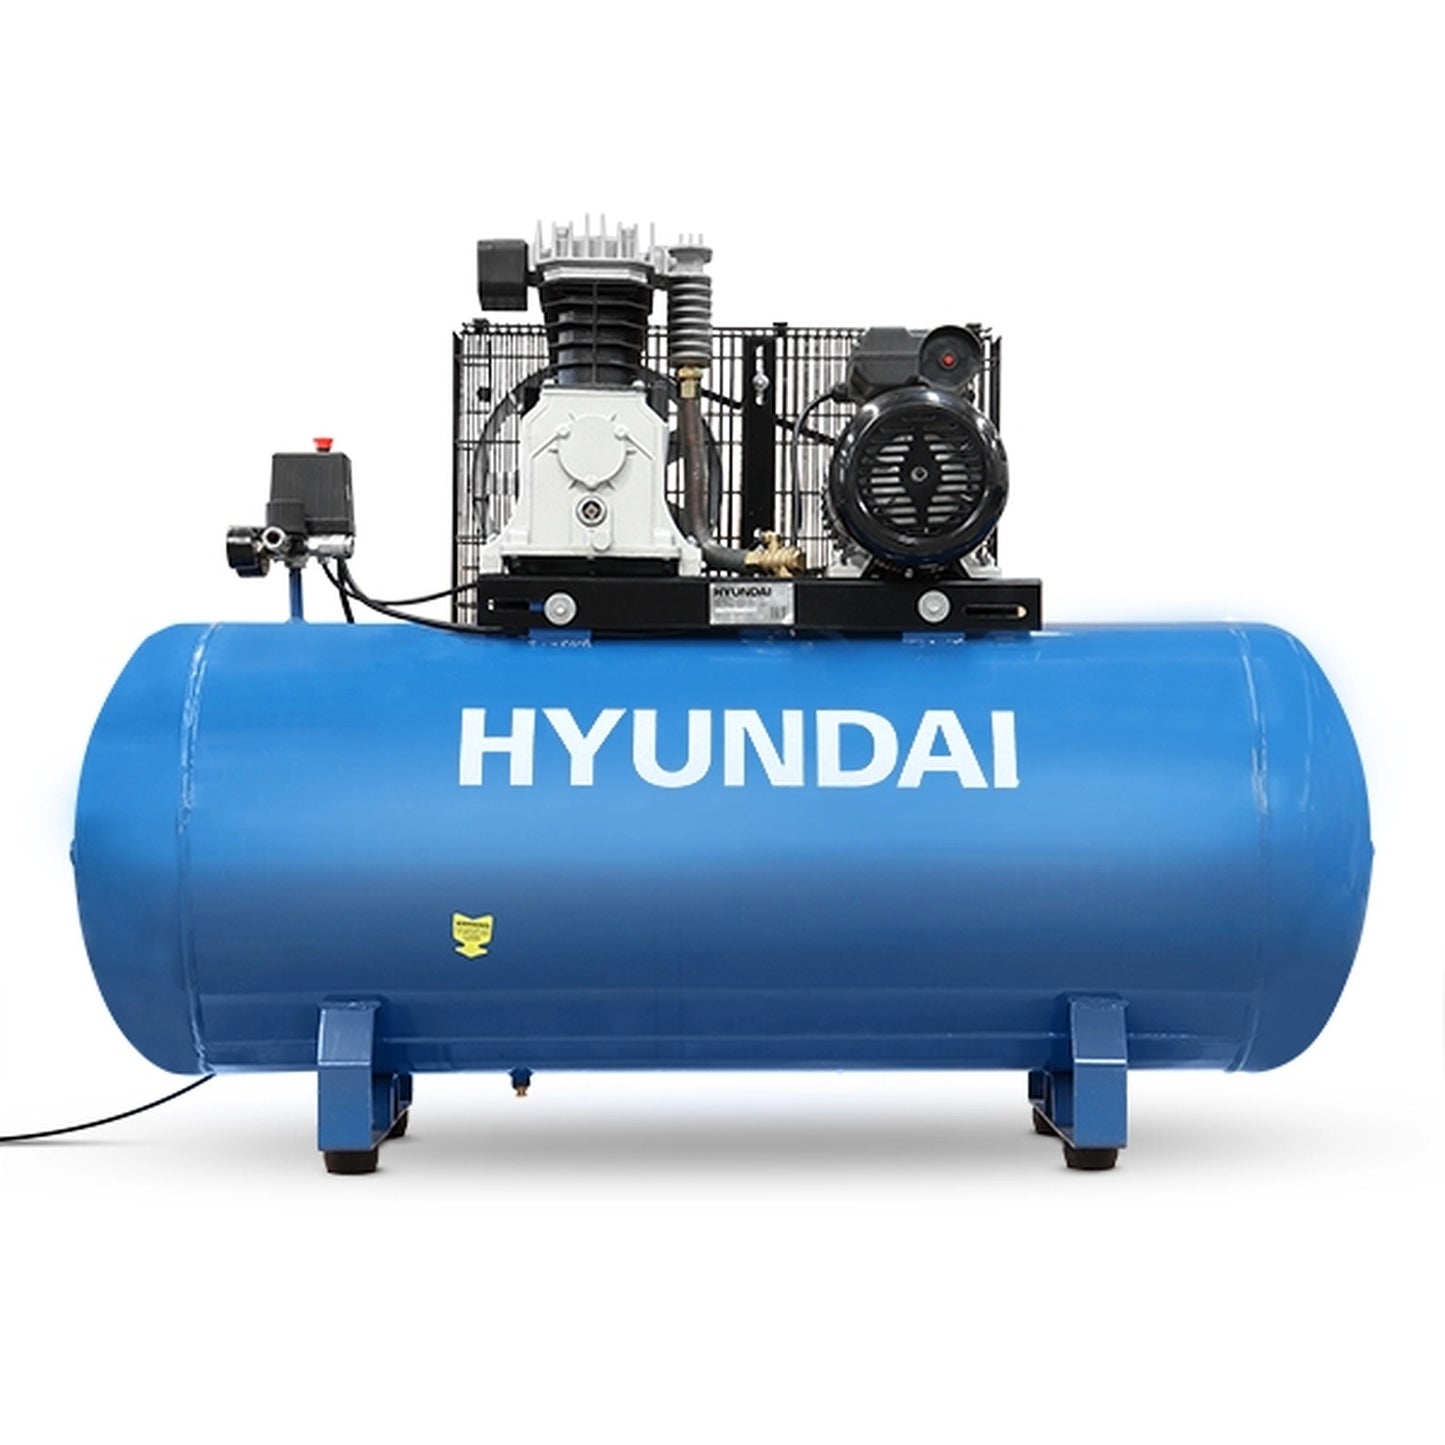 Hyundai HY3200S Electric Air Compressor 200L